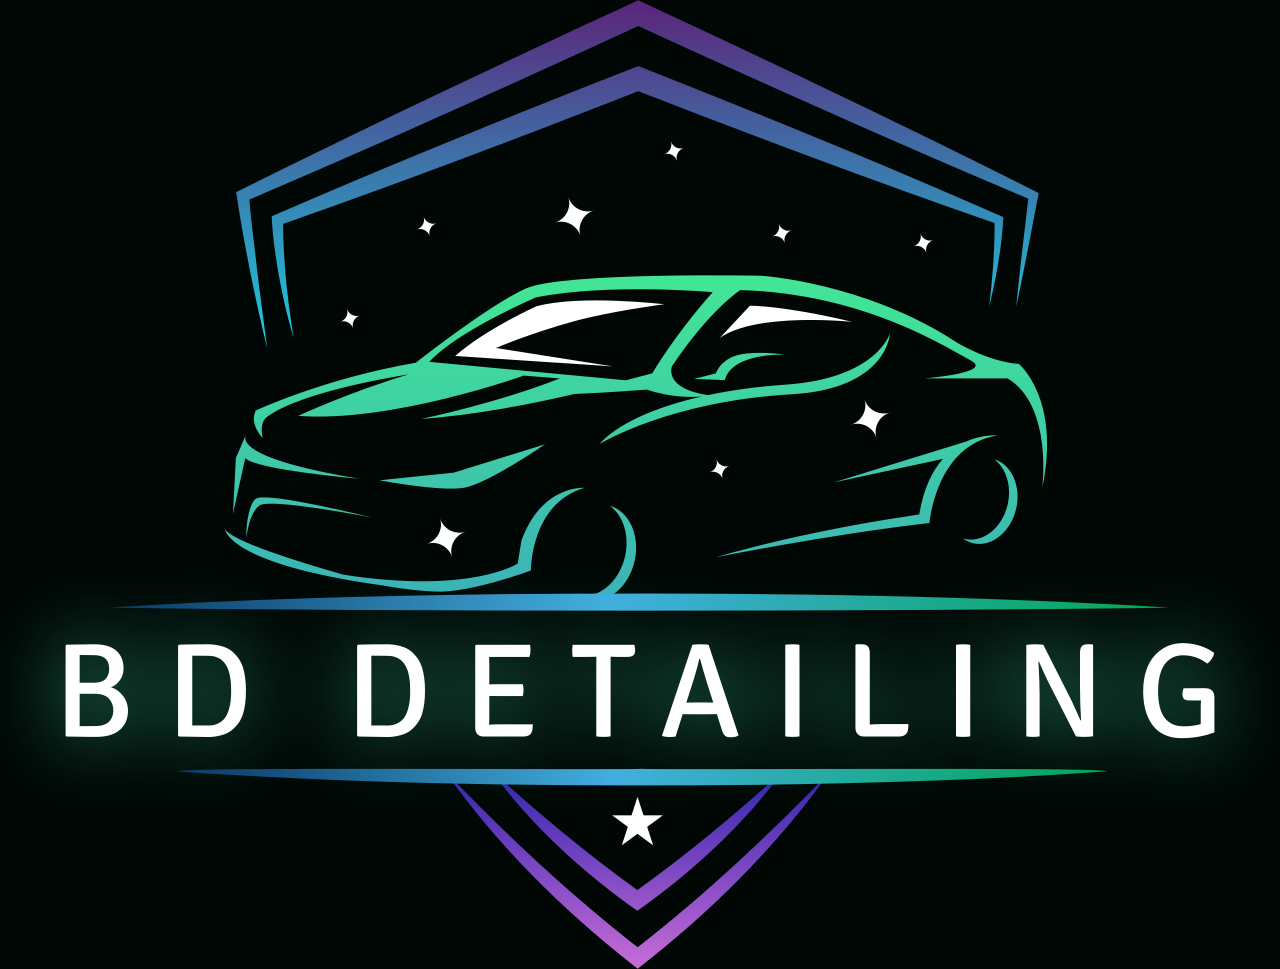 BD Detailing's logo